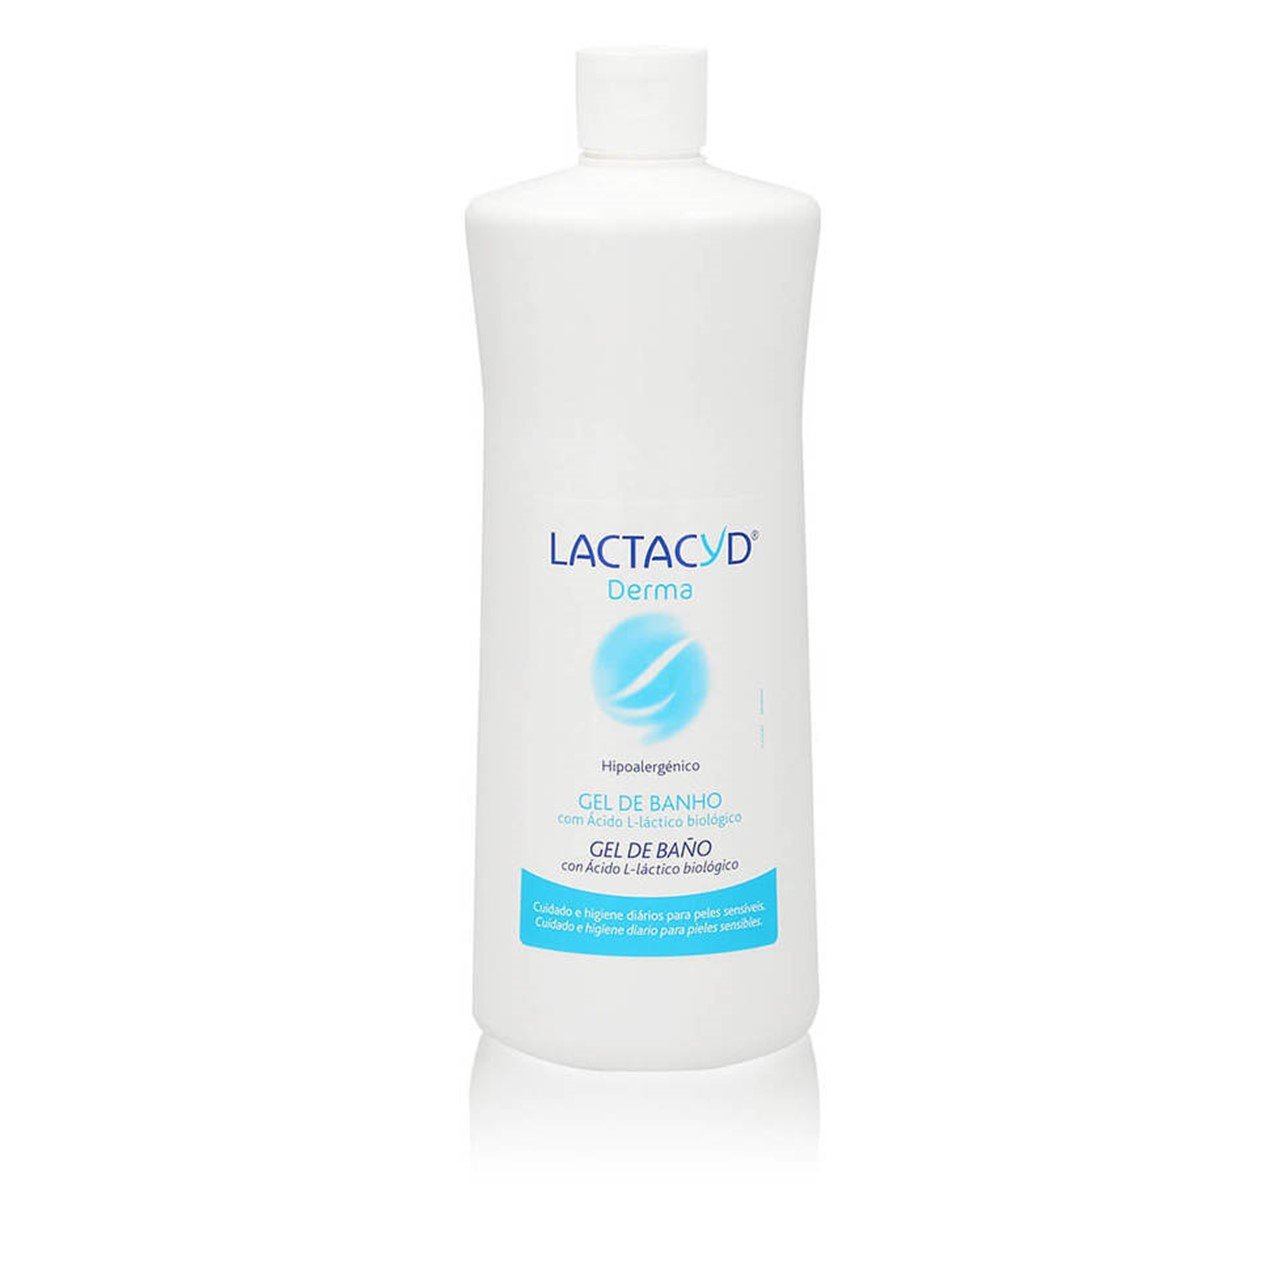 Lactacyd Derma Shower Gel 1L (33.81fl oz)